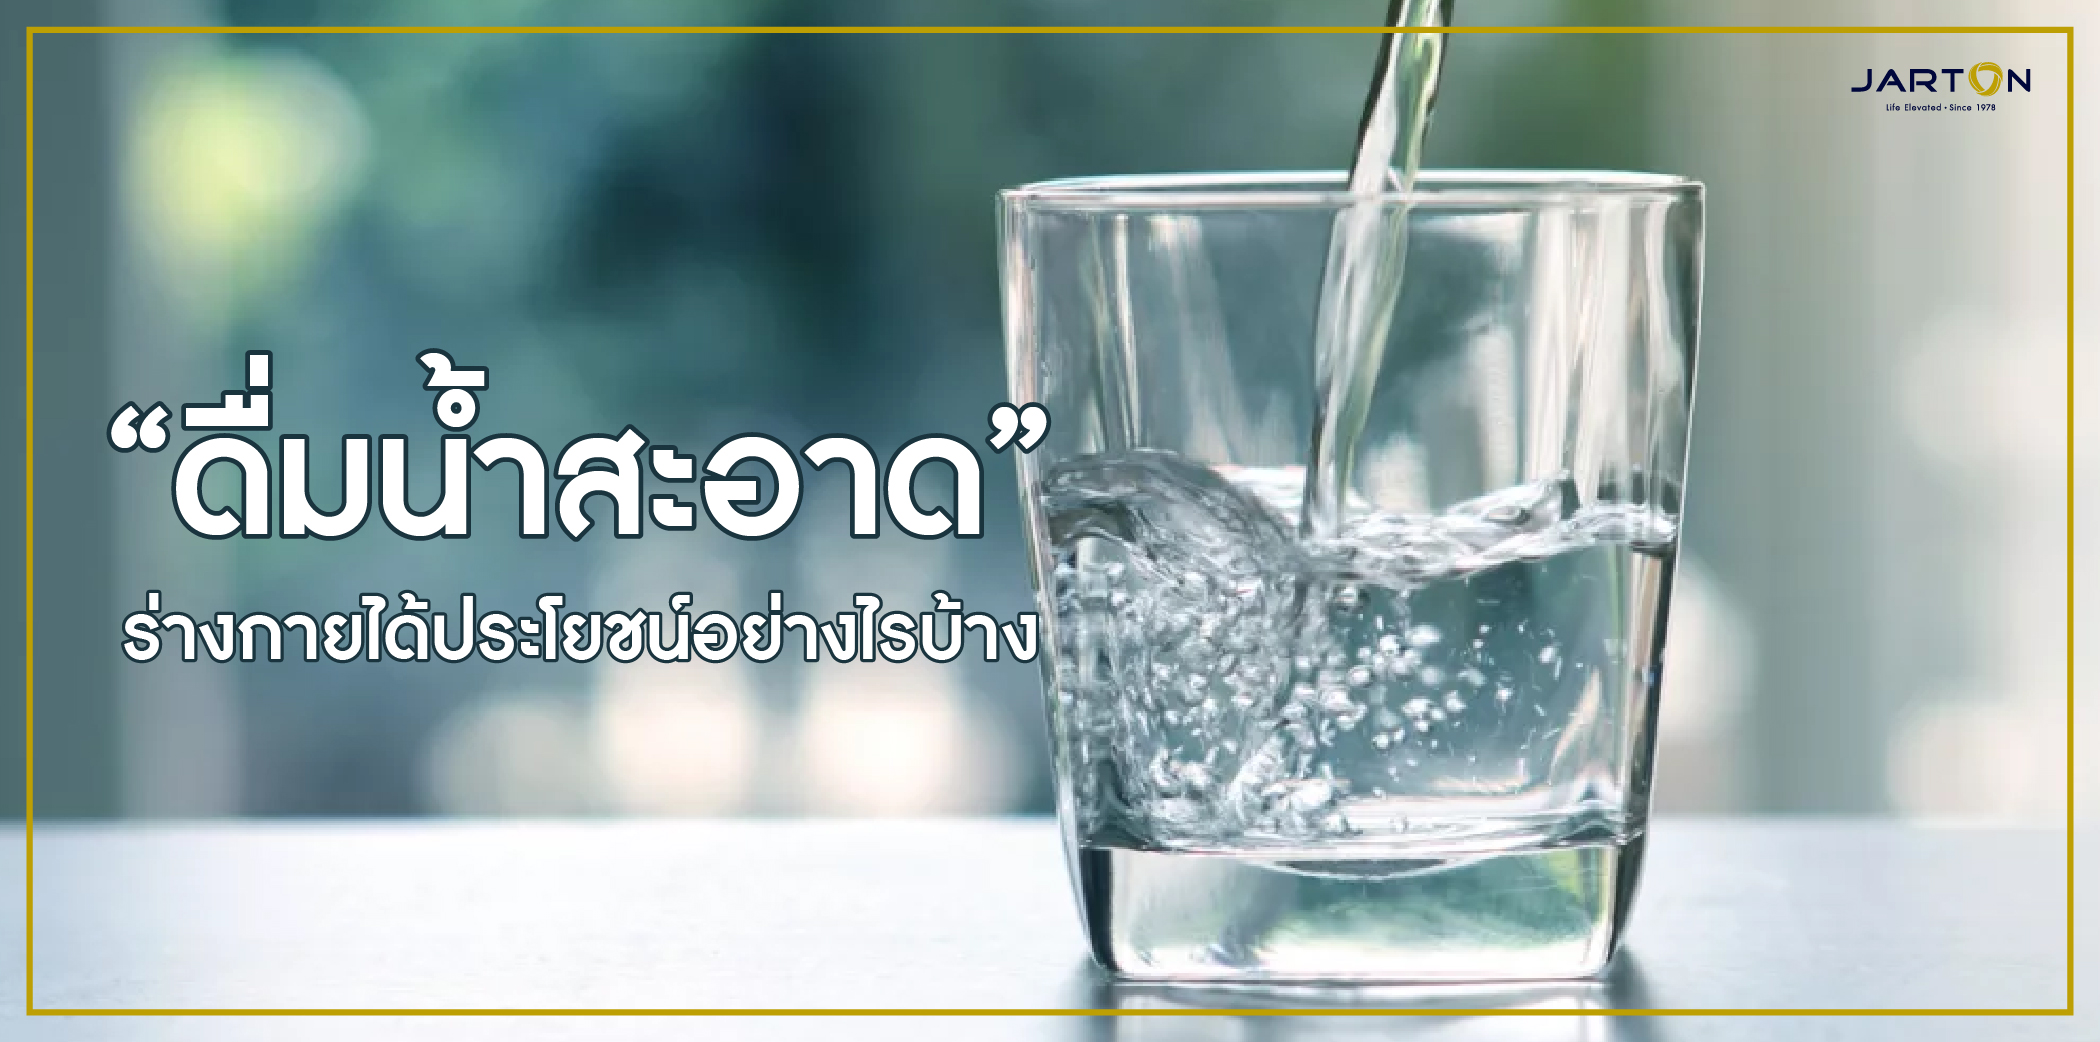 “ดื่มน้ำสะอาด” ร่างกายได้ประโยชน์อย่างไรบ้าง